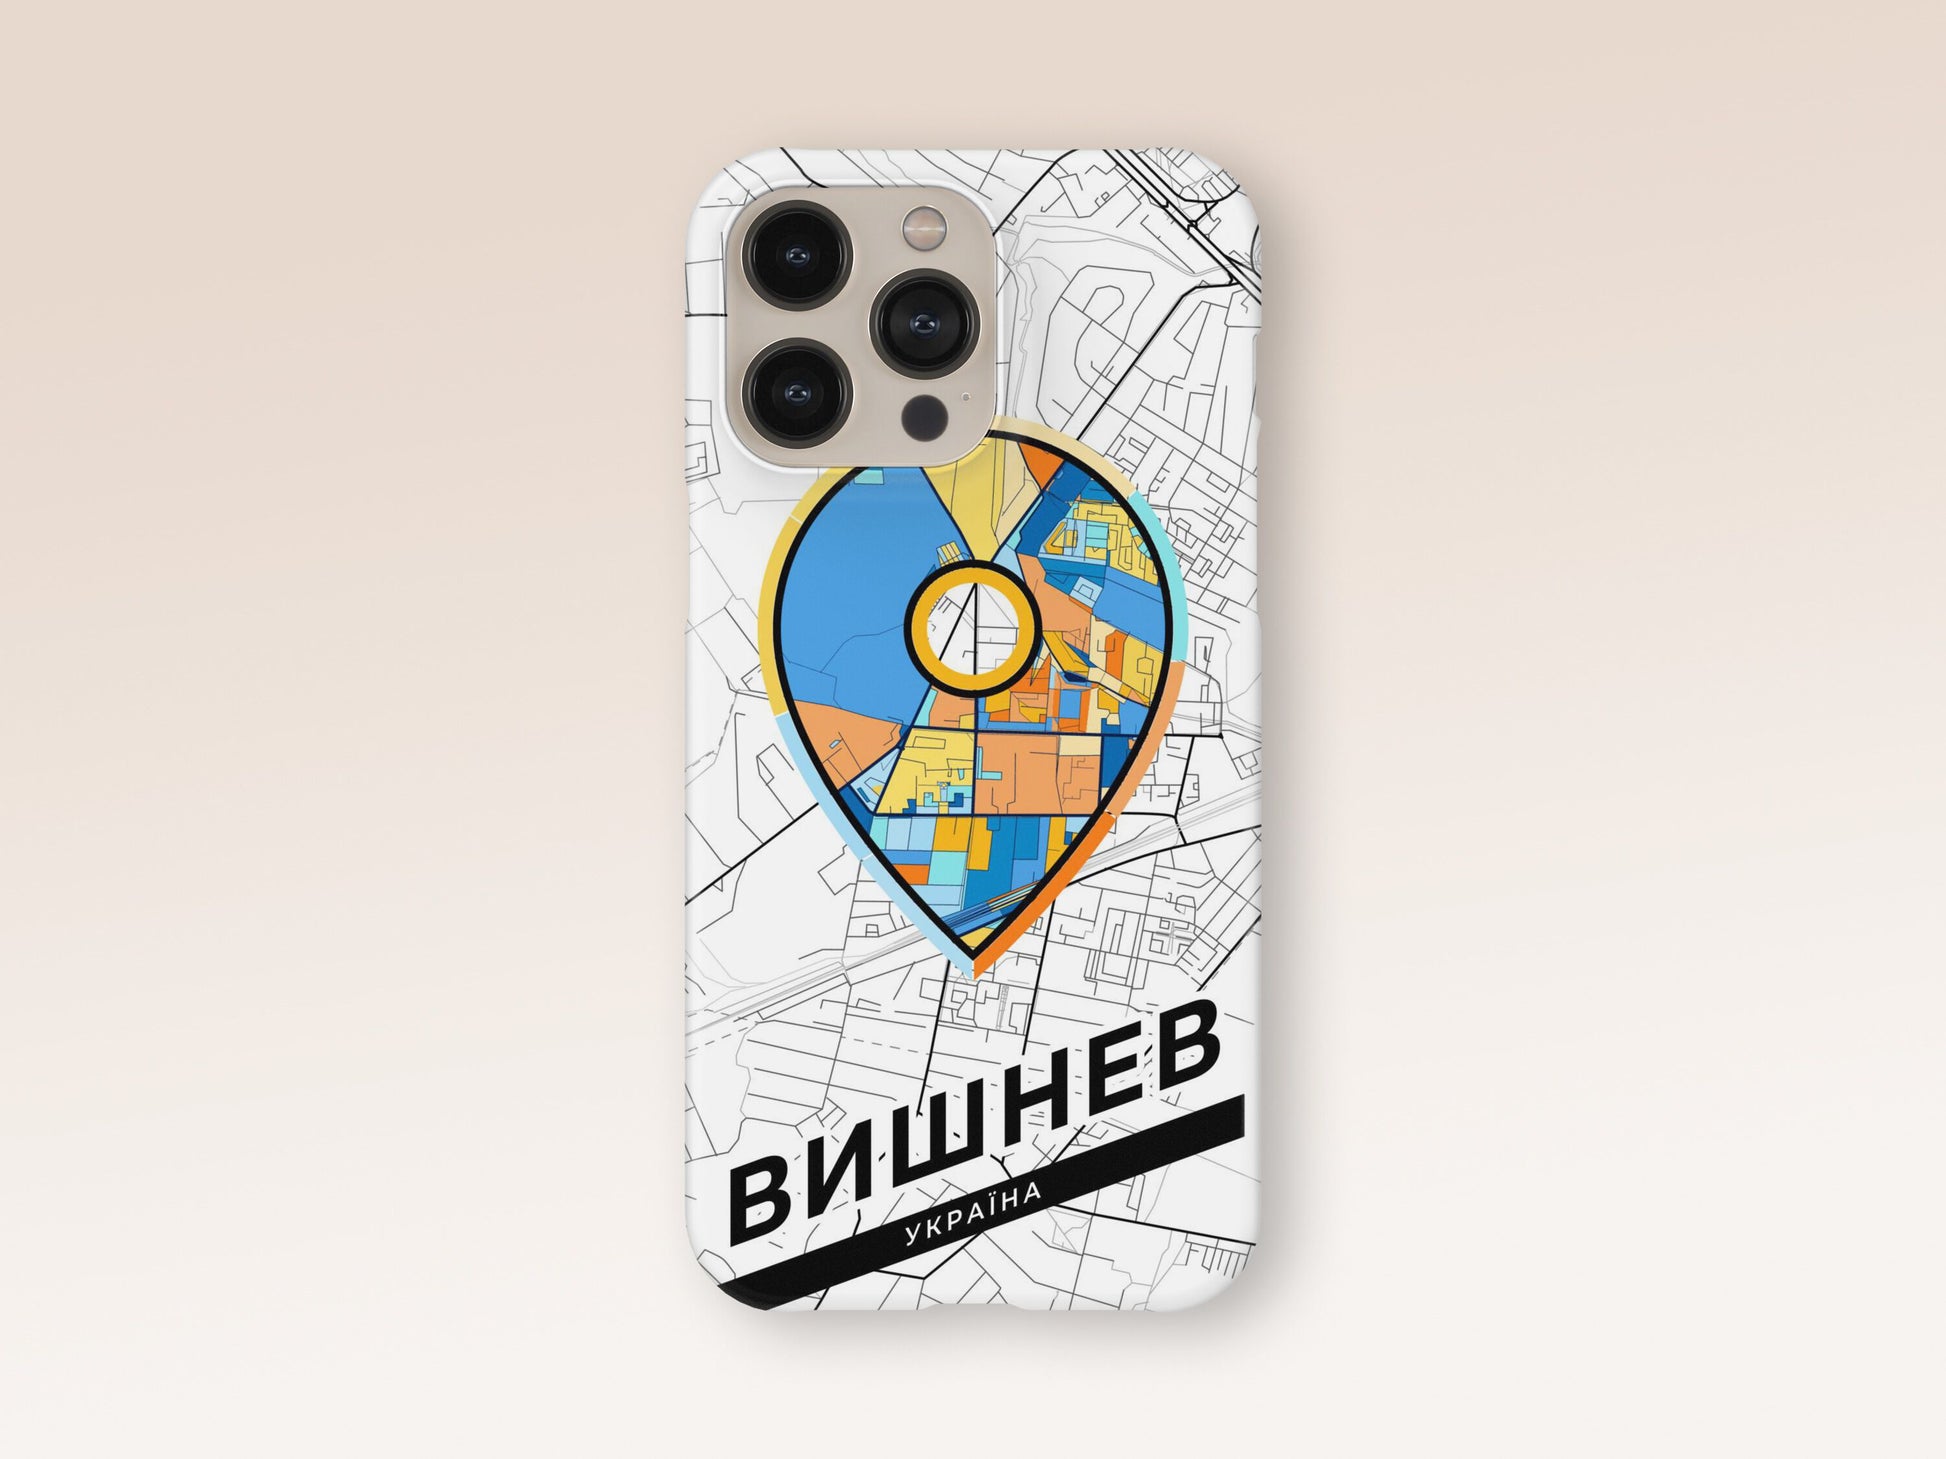 Vyshneve Ukraine slim phone case with colorful icon 1